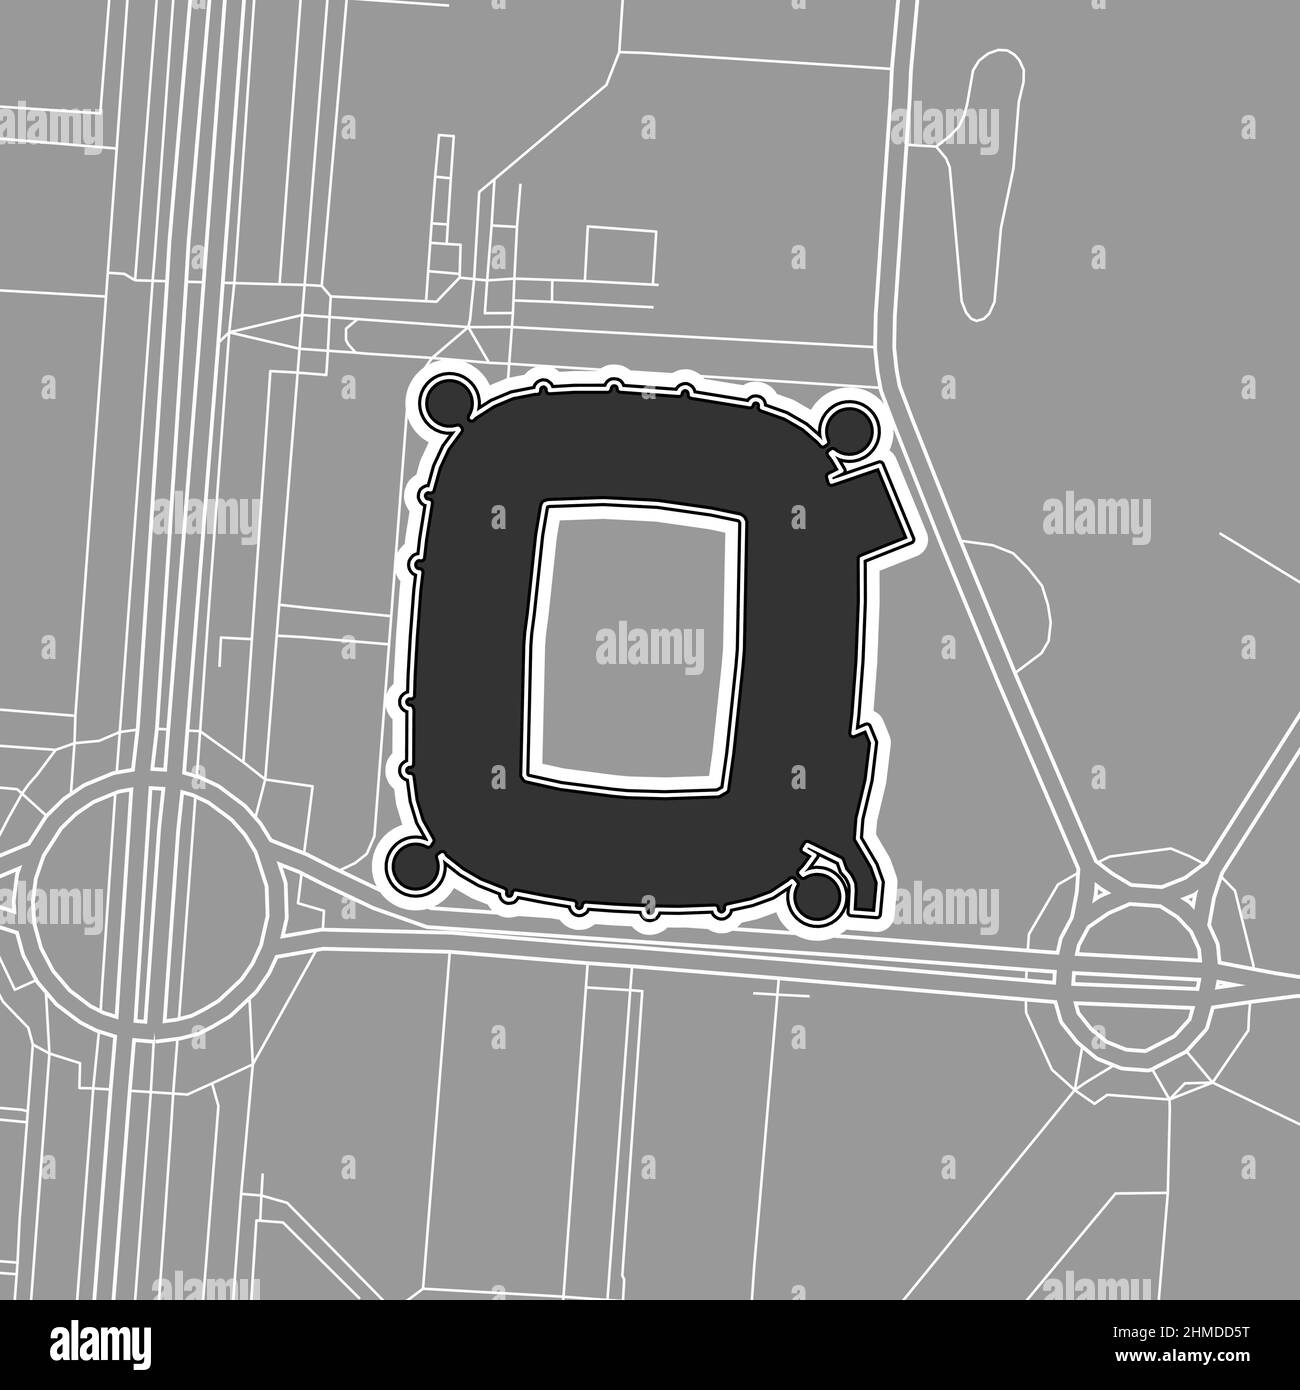 Madrid, stade de baseball MLB, carte vectorielle. La carte du statium de base-ball a été tracée avec des zones blanches et des lignes pour les routes principales, les routes latérales. Illustration de Vecteur